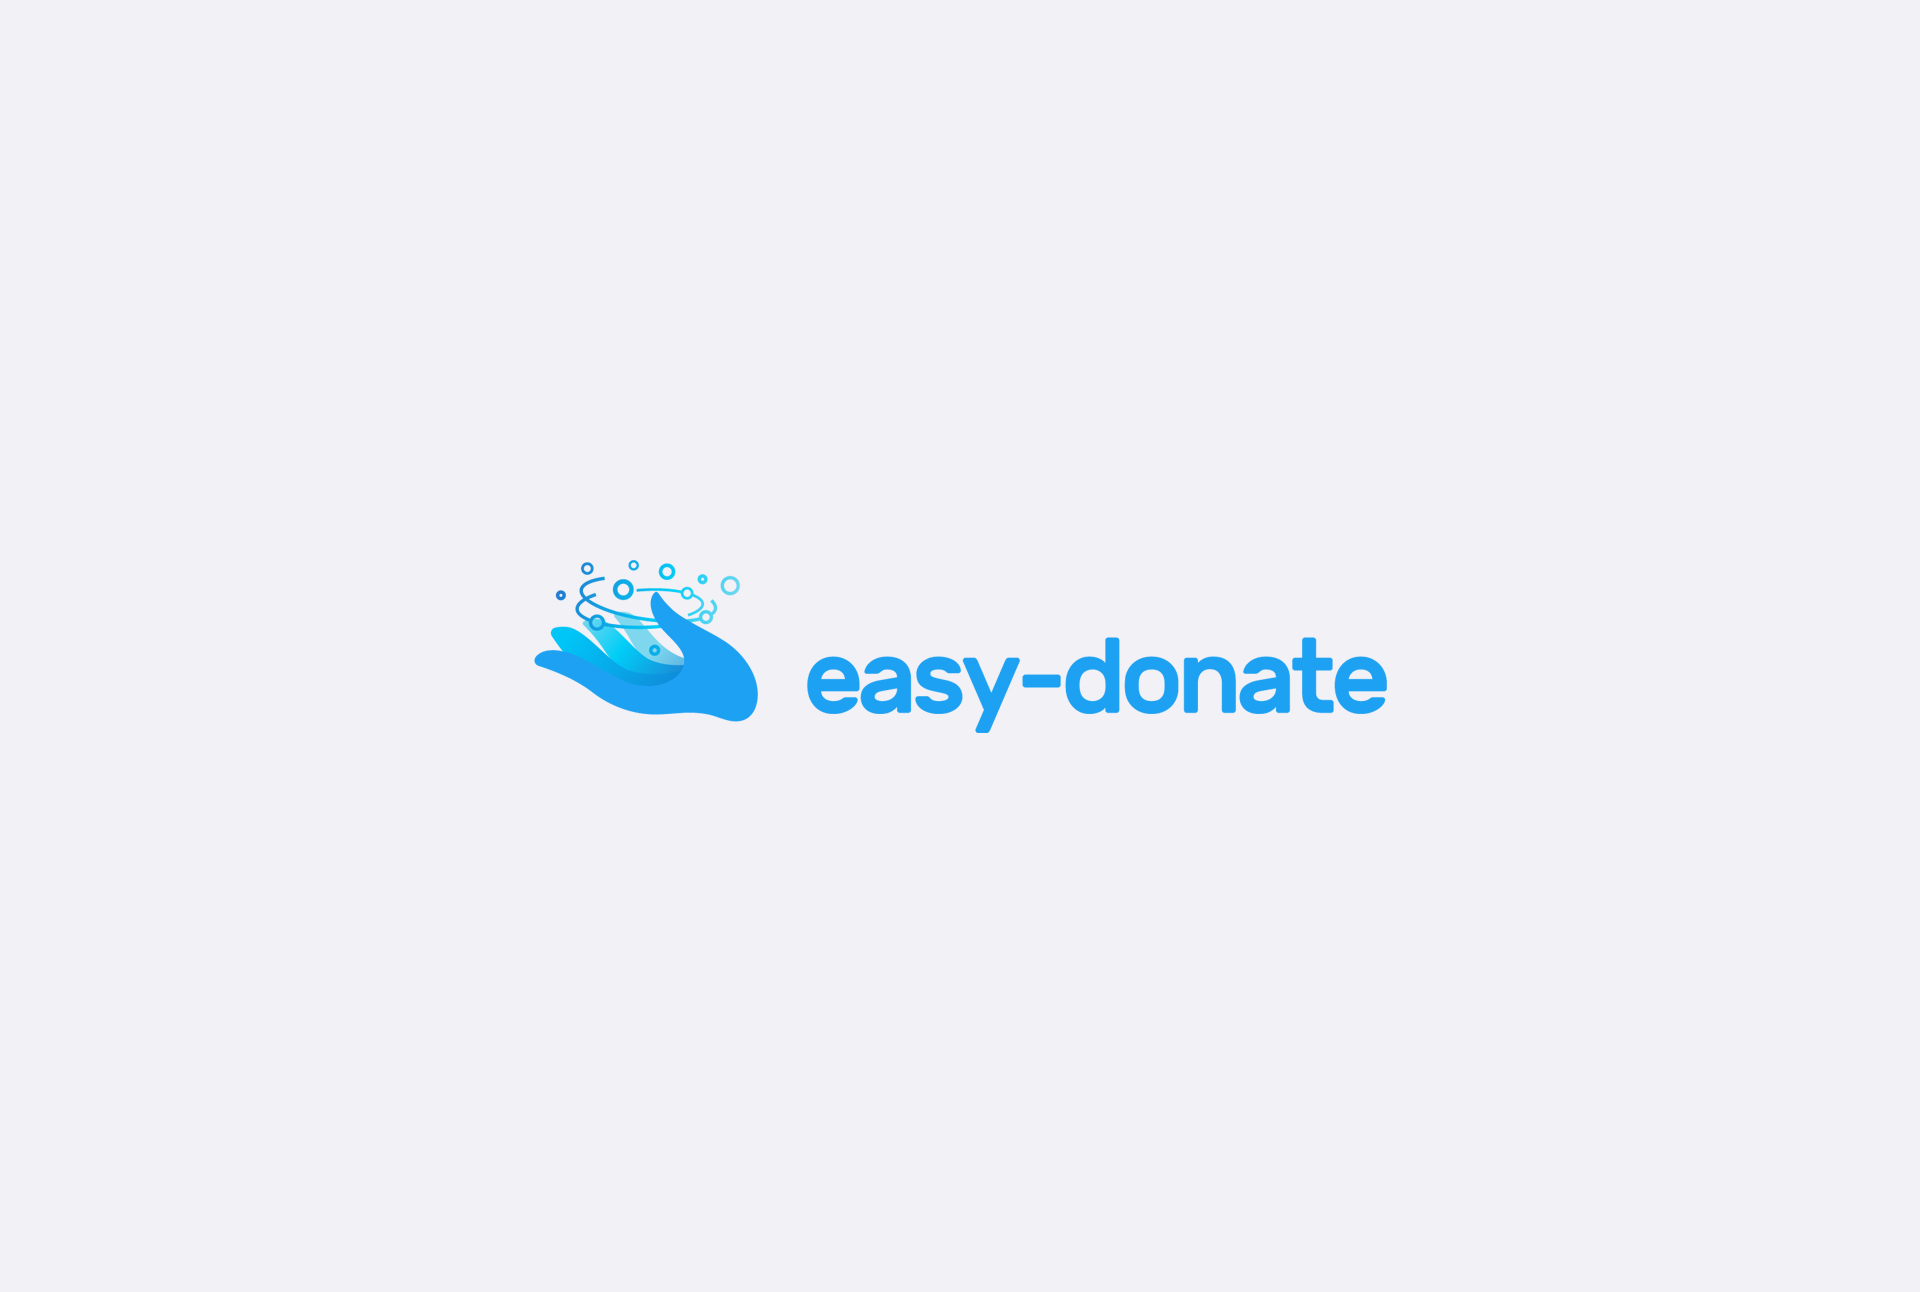 Easy donate